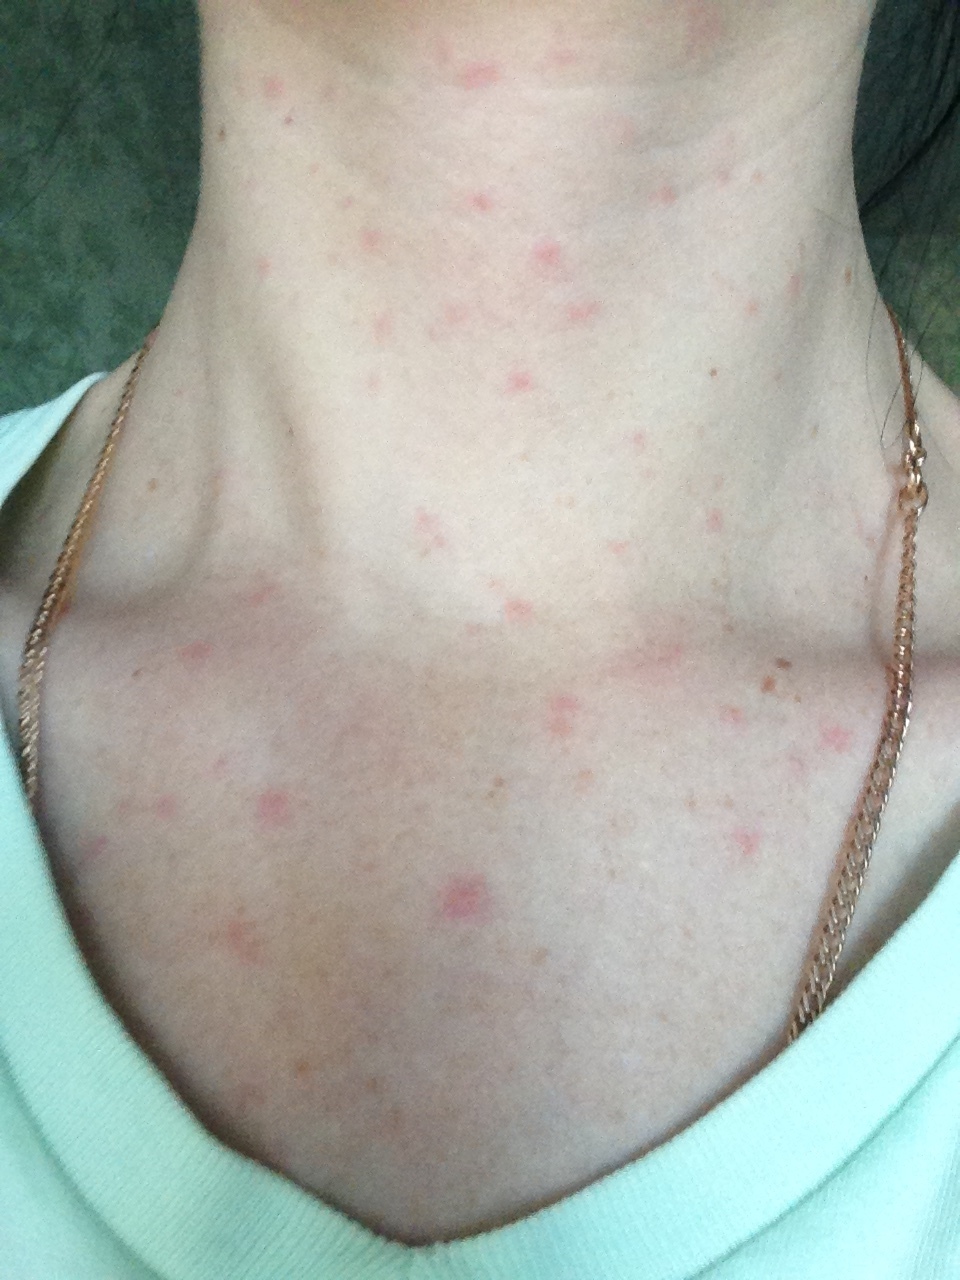 Аллергические реакции и кожная сыпь